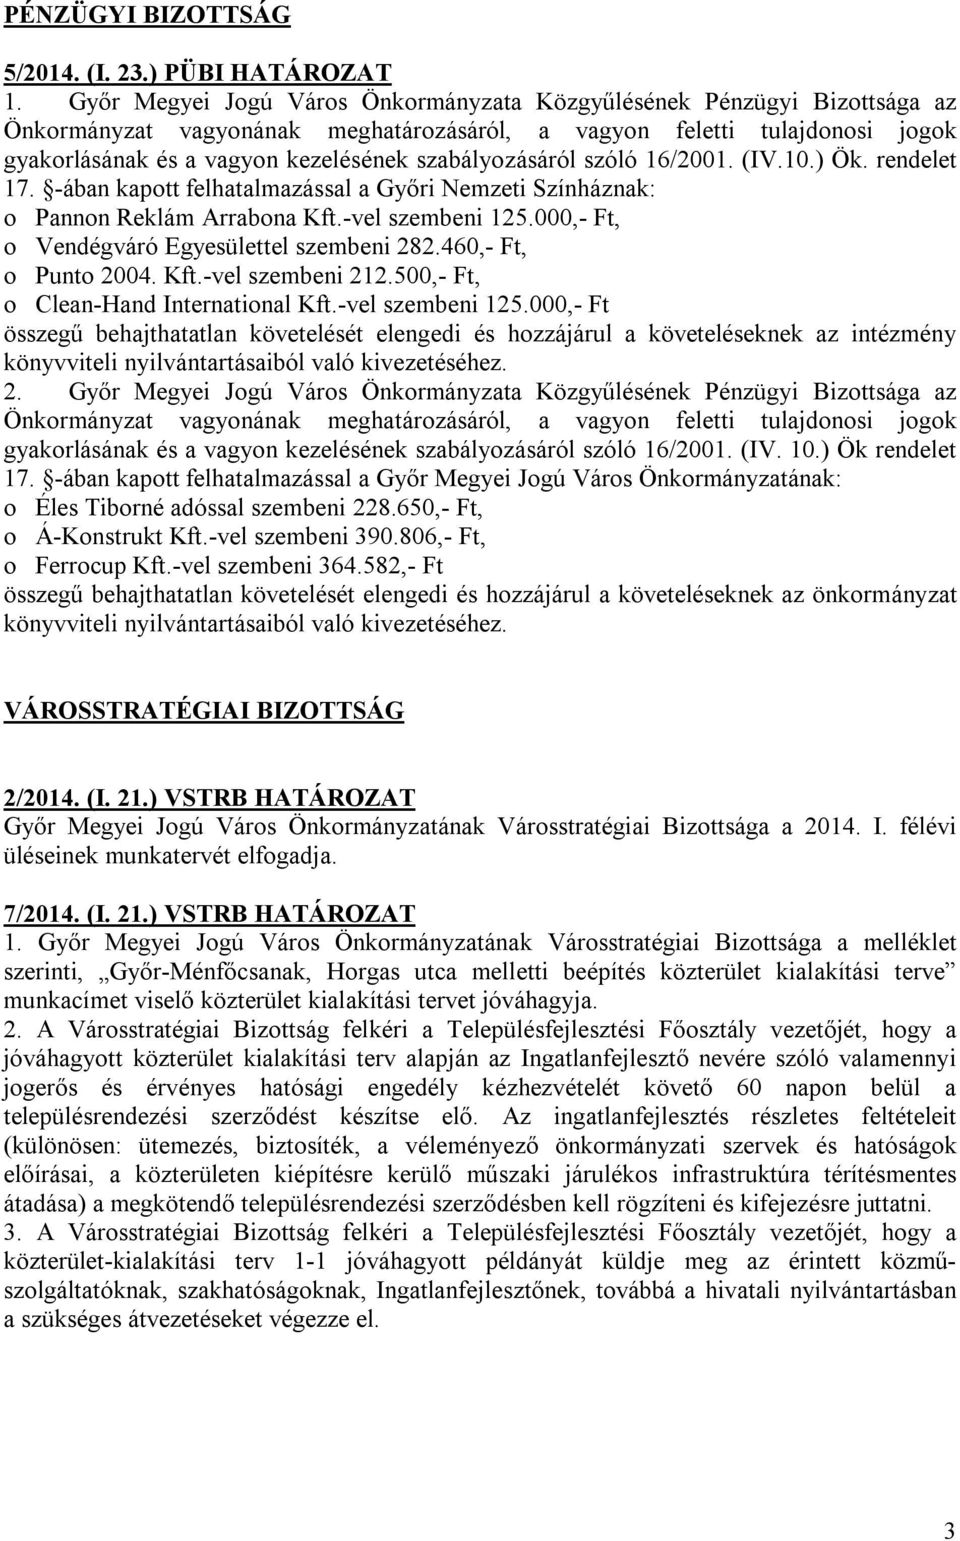 szabályozásáról szóló 16/2001. (IV.10.) Ök. rendelet 17. -ában kapott felhatalmazással a Győri Nemzeti Színháznak: o Pannon Reklám Arrabona Kft.-vel szembeni 125.